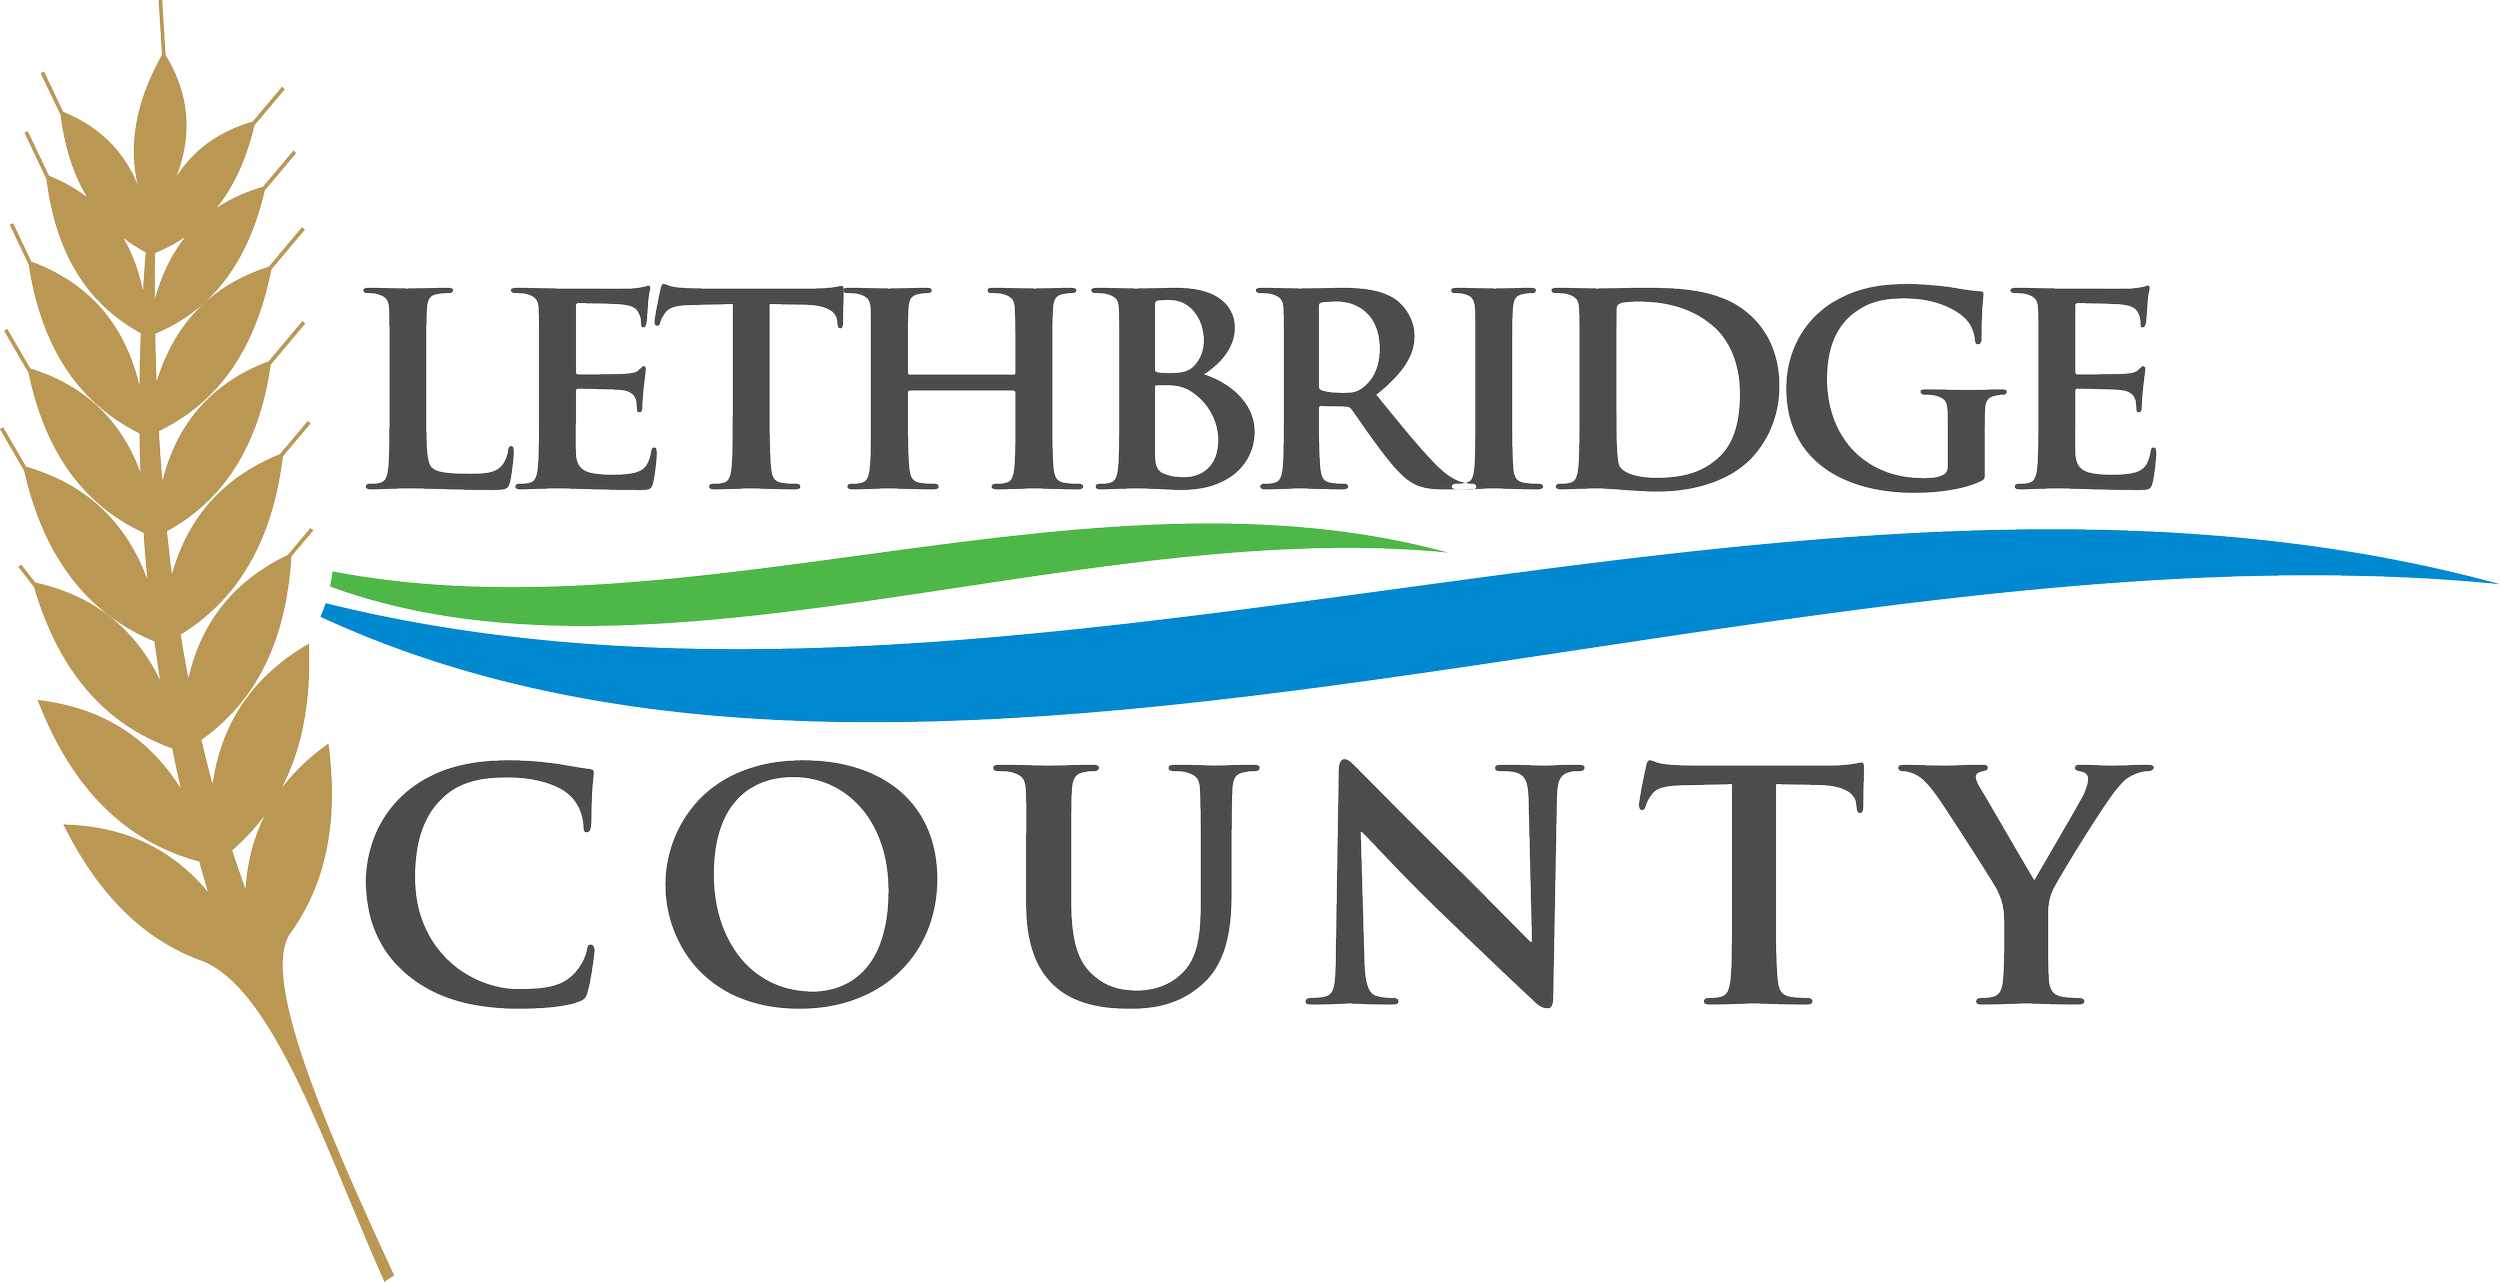 Lethbridge County